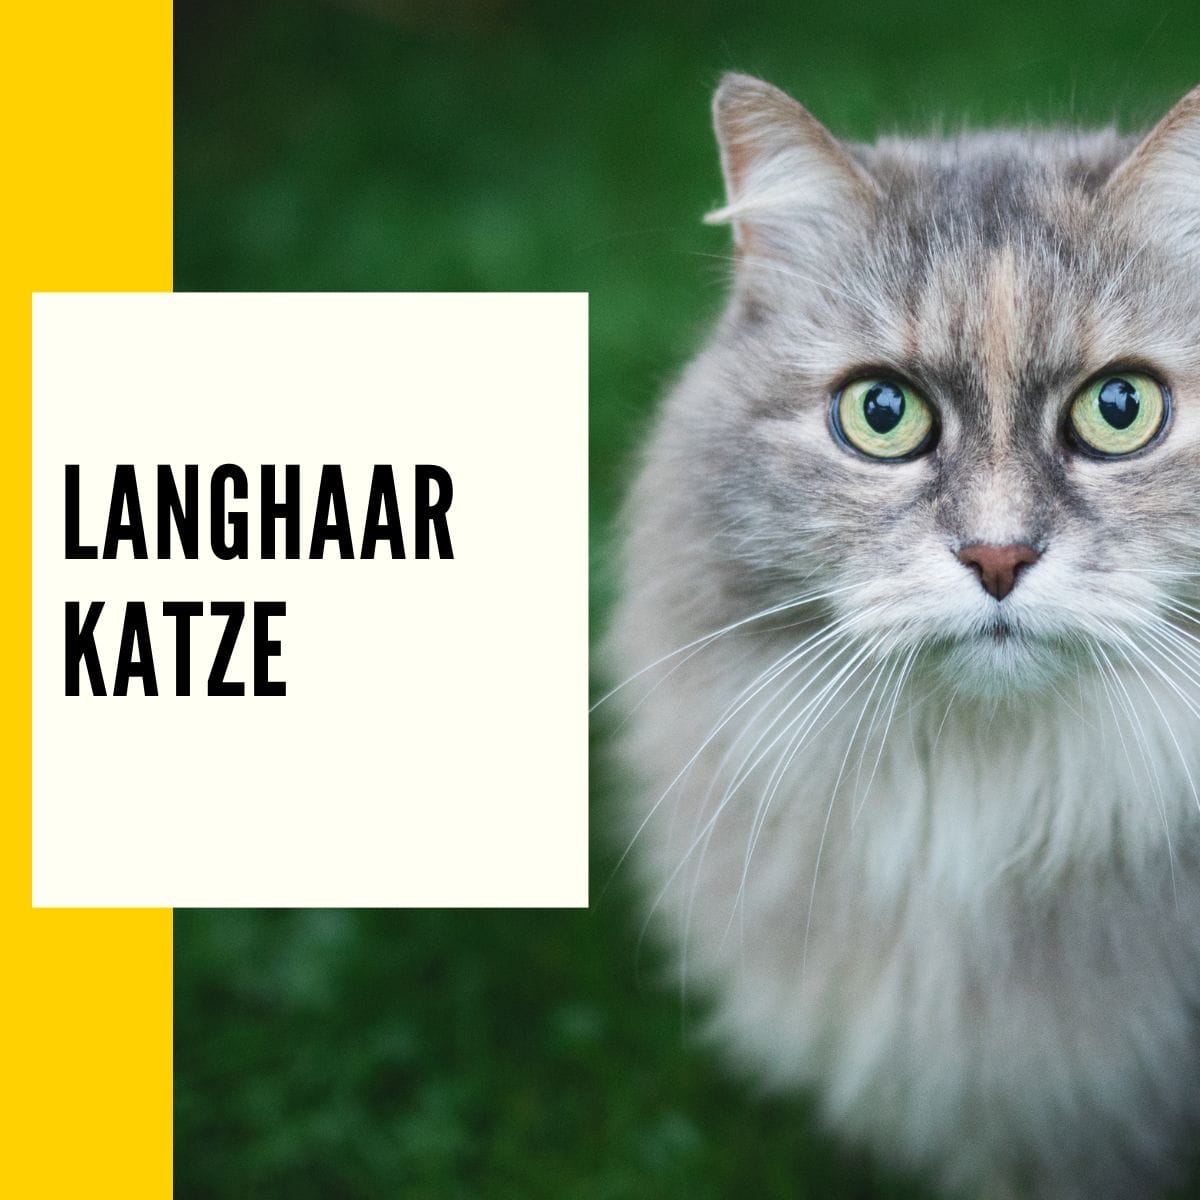 Langhaar Katze: In diesem Beitrag zeigen wir die Katzenrassen und Eigenschaften von Langhaar Katzen!